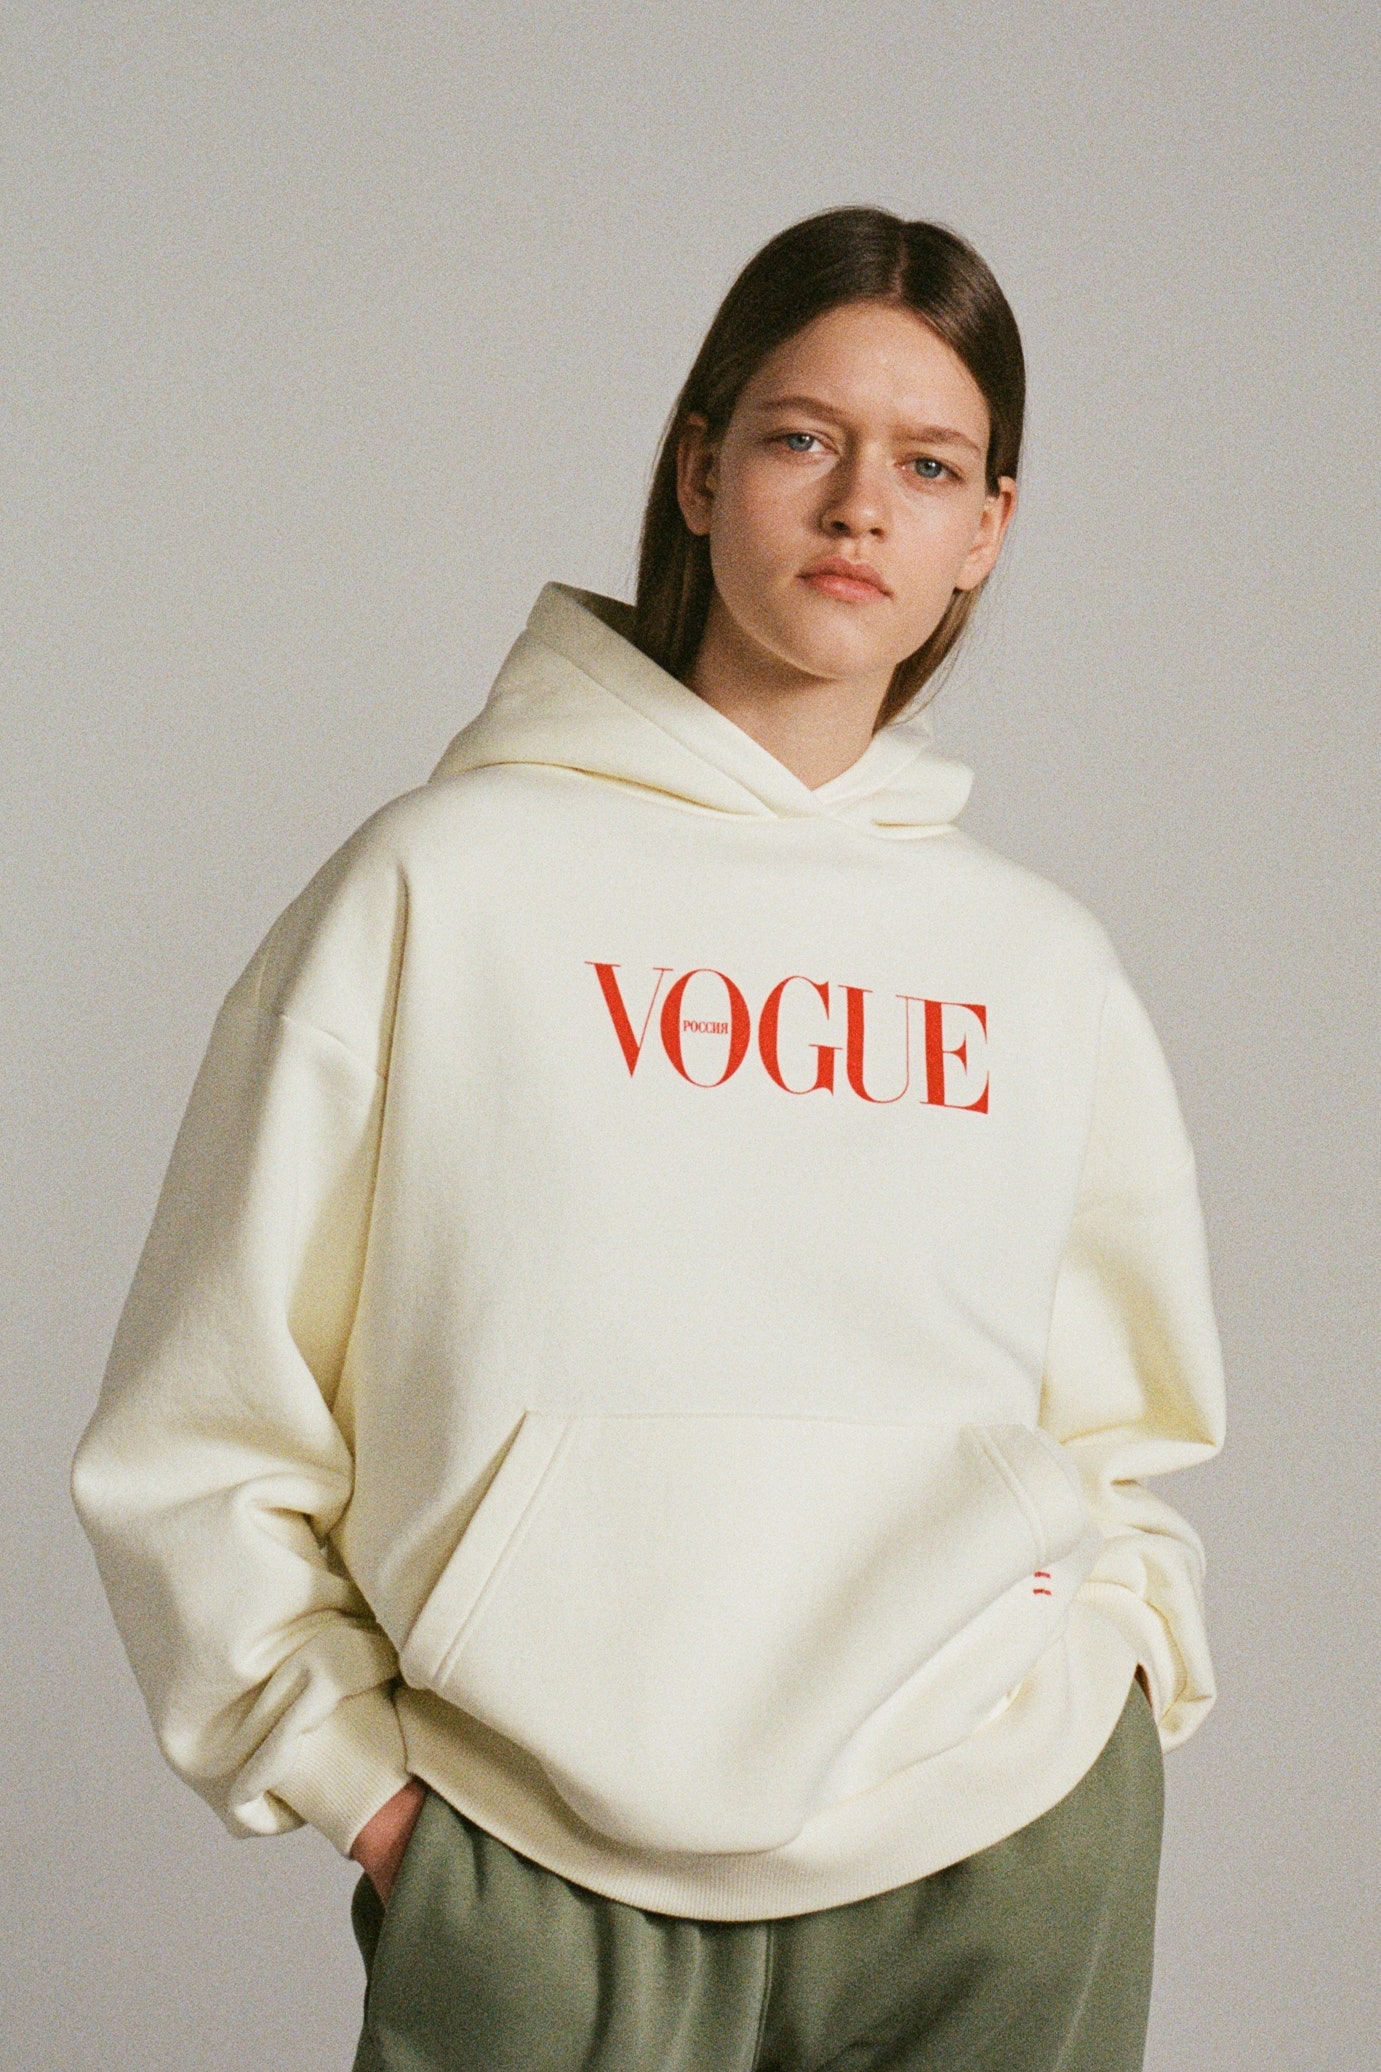 Vogue Россия представили рождественскую коллекцию